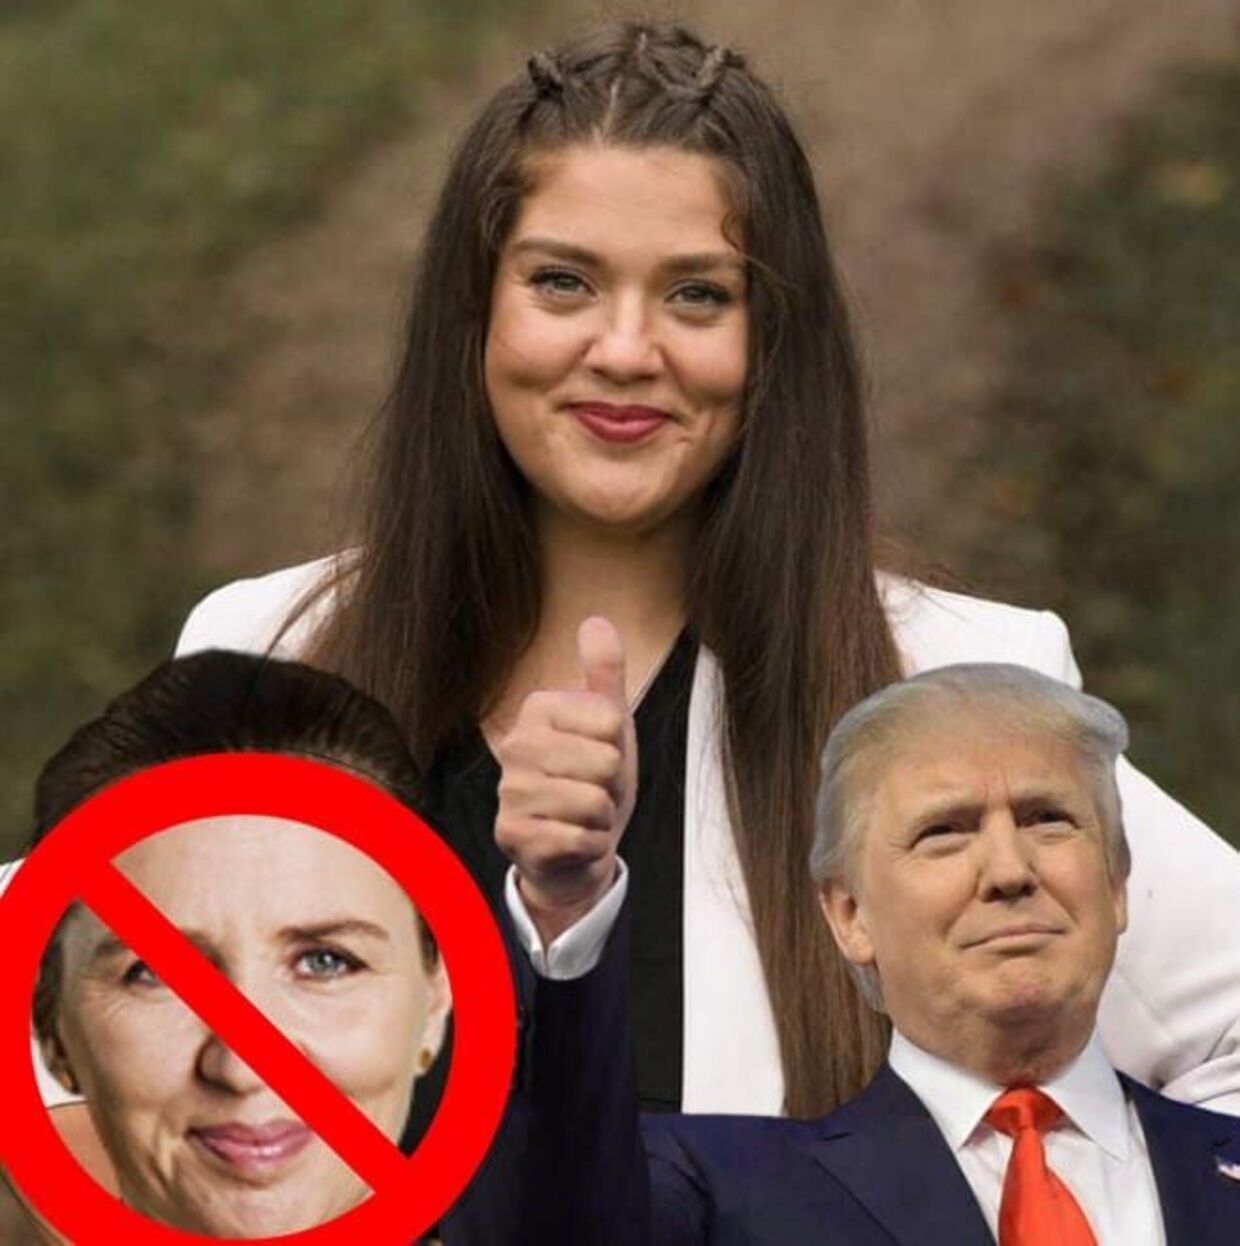 Vivian Alexandru har som profilbillede sig selv med Mette Frederiksen, der har en rød streg henover, og så Trump. Sidstnævnte støtter hun dog modsat Mette Frederiksen. 